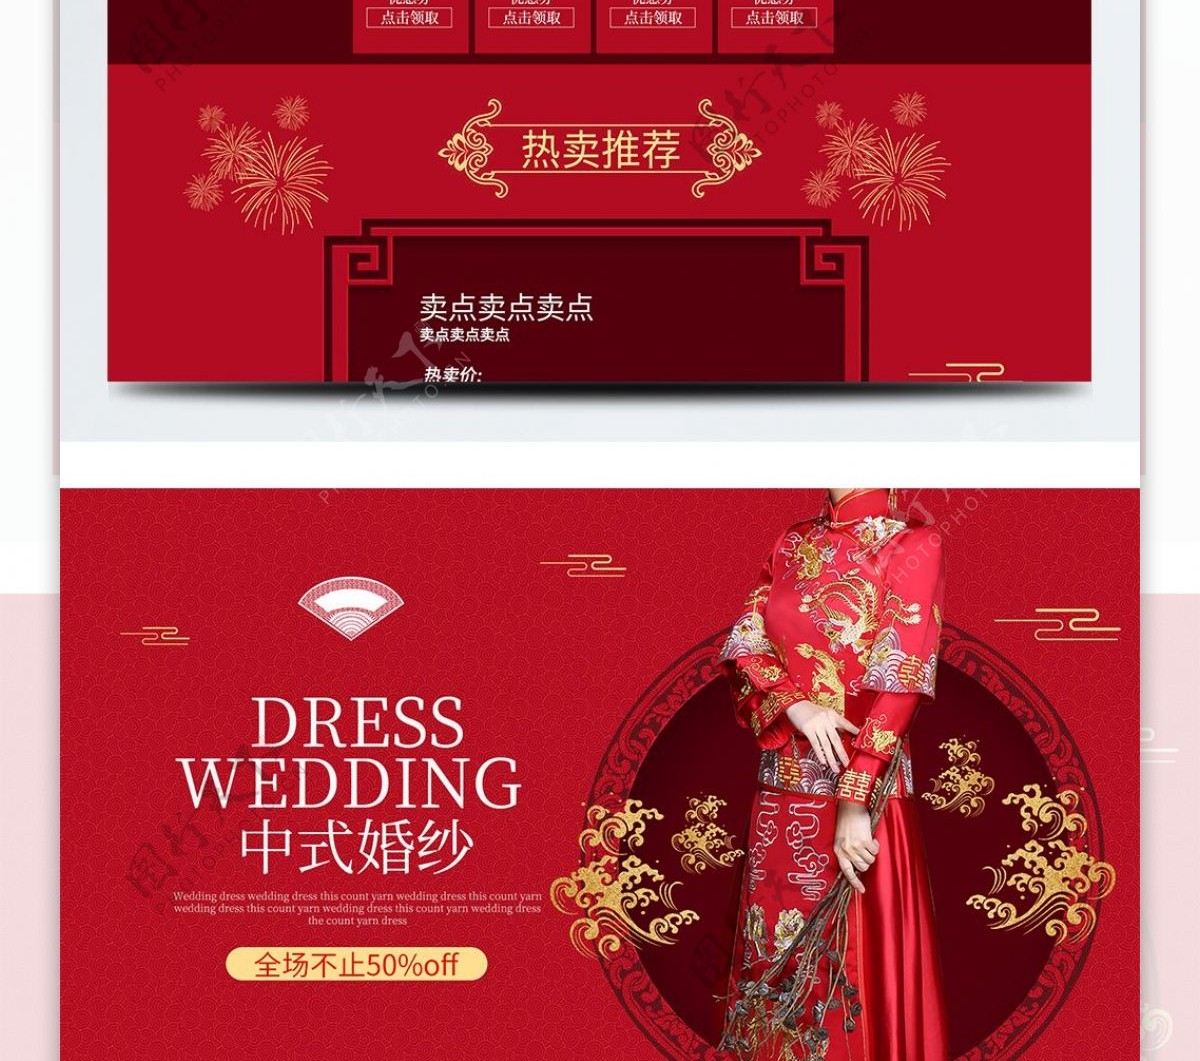 中式婚纱影楼首页简约简洁红色质感年终大促